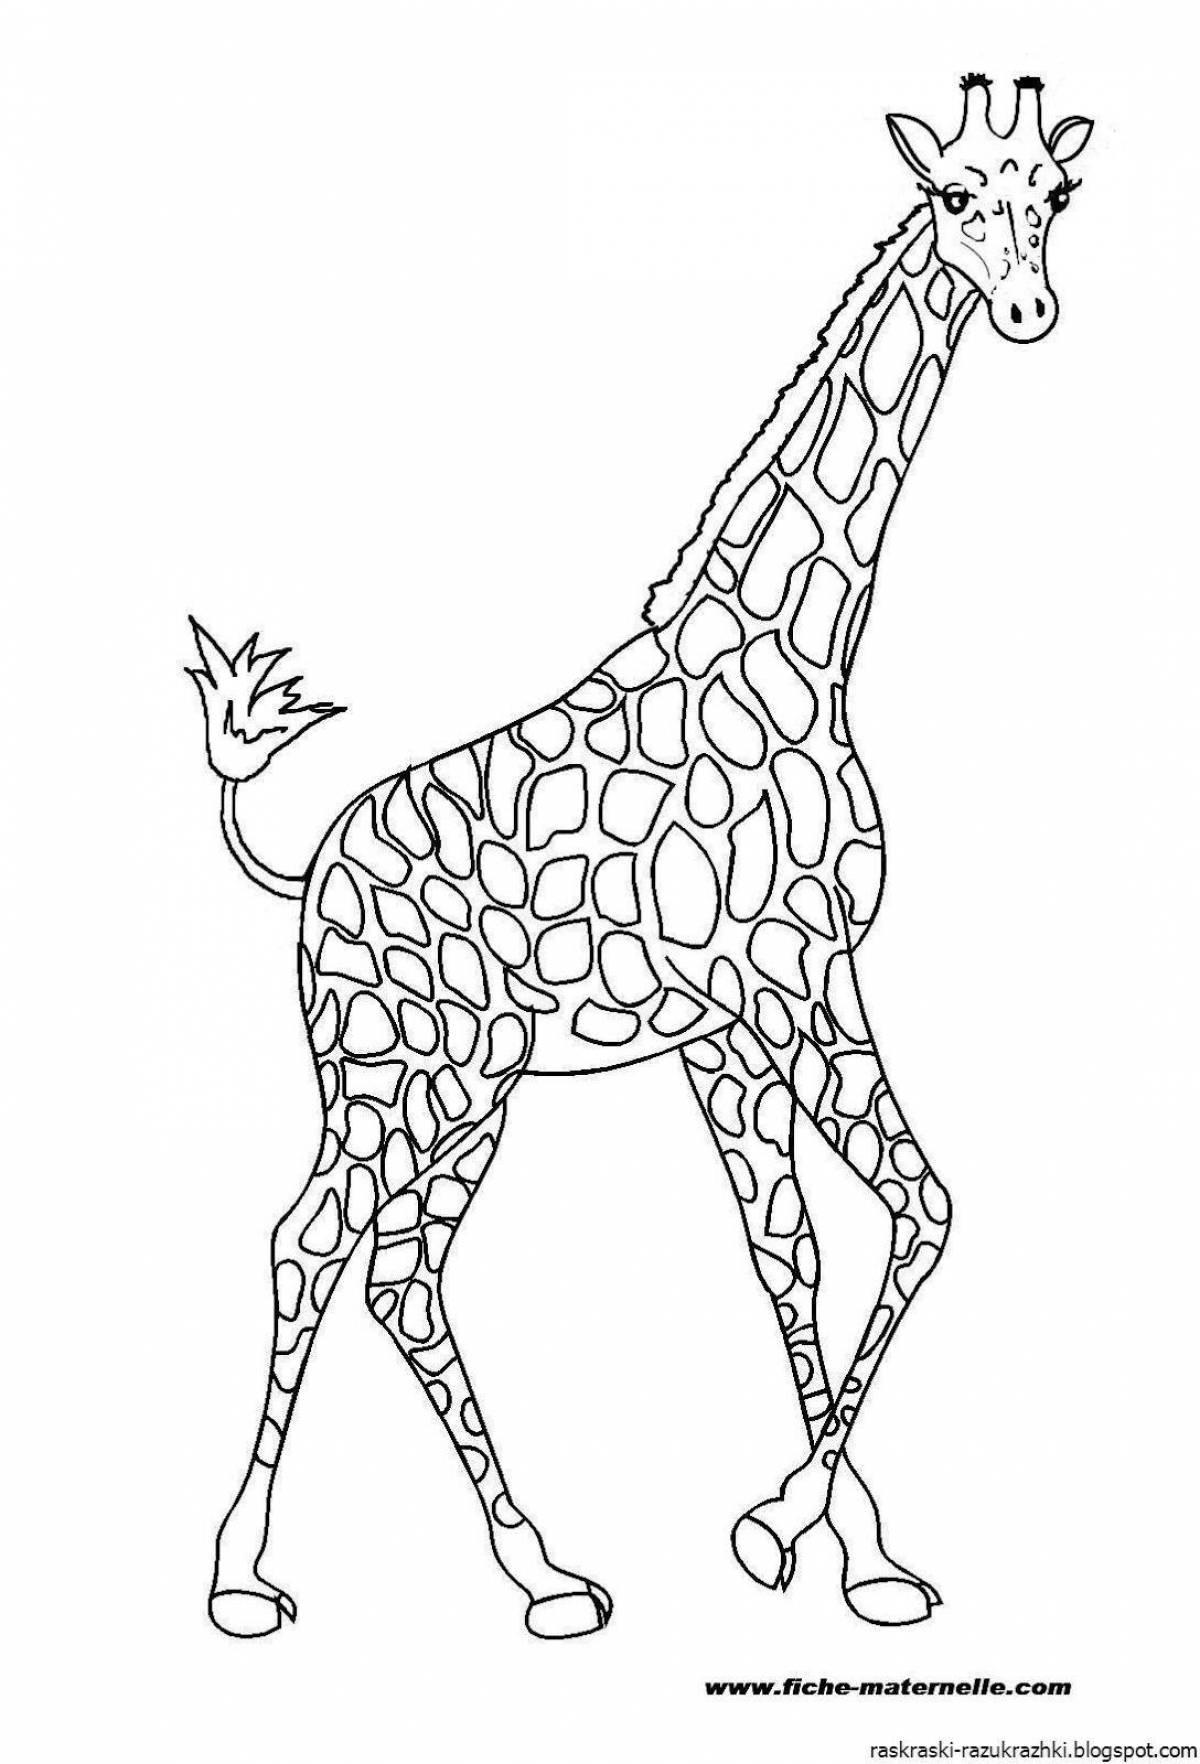 Adorable giraffe coloring book